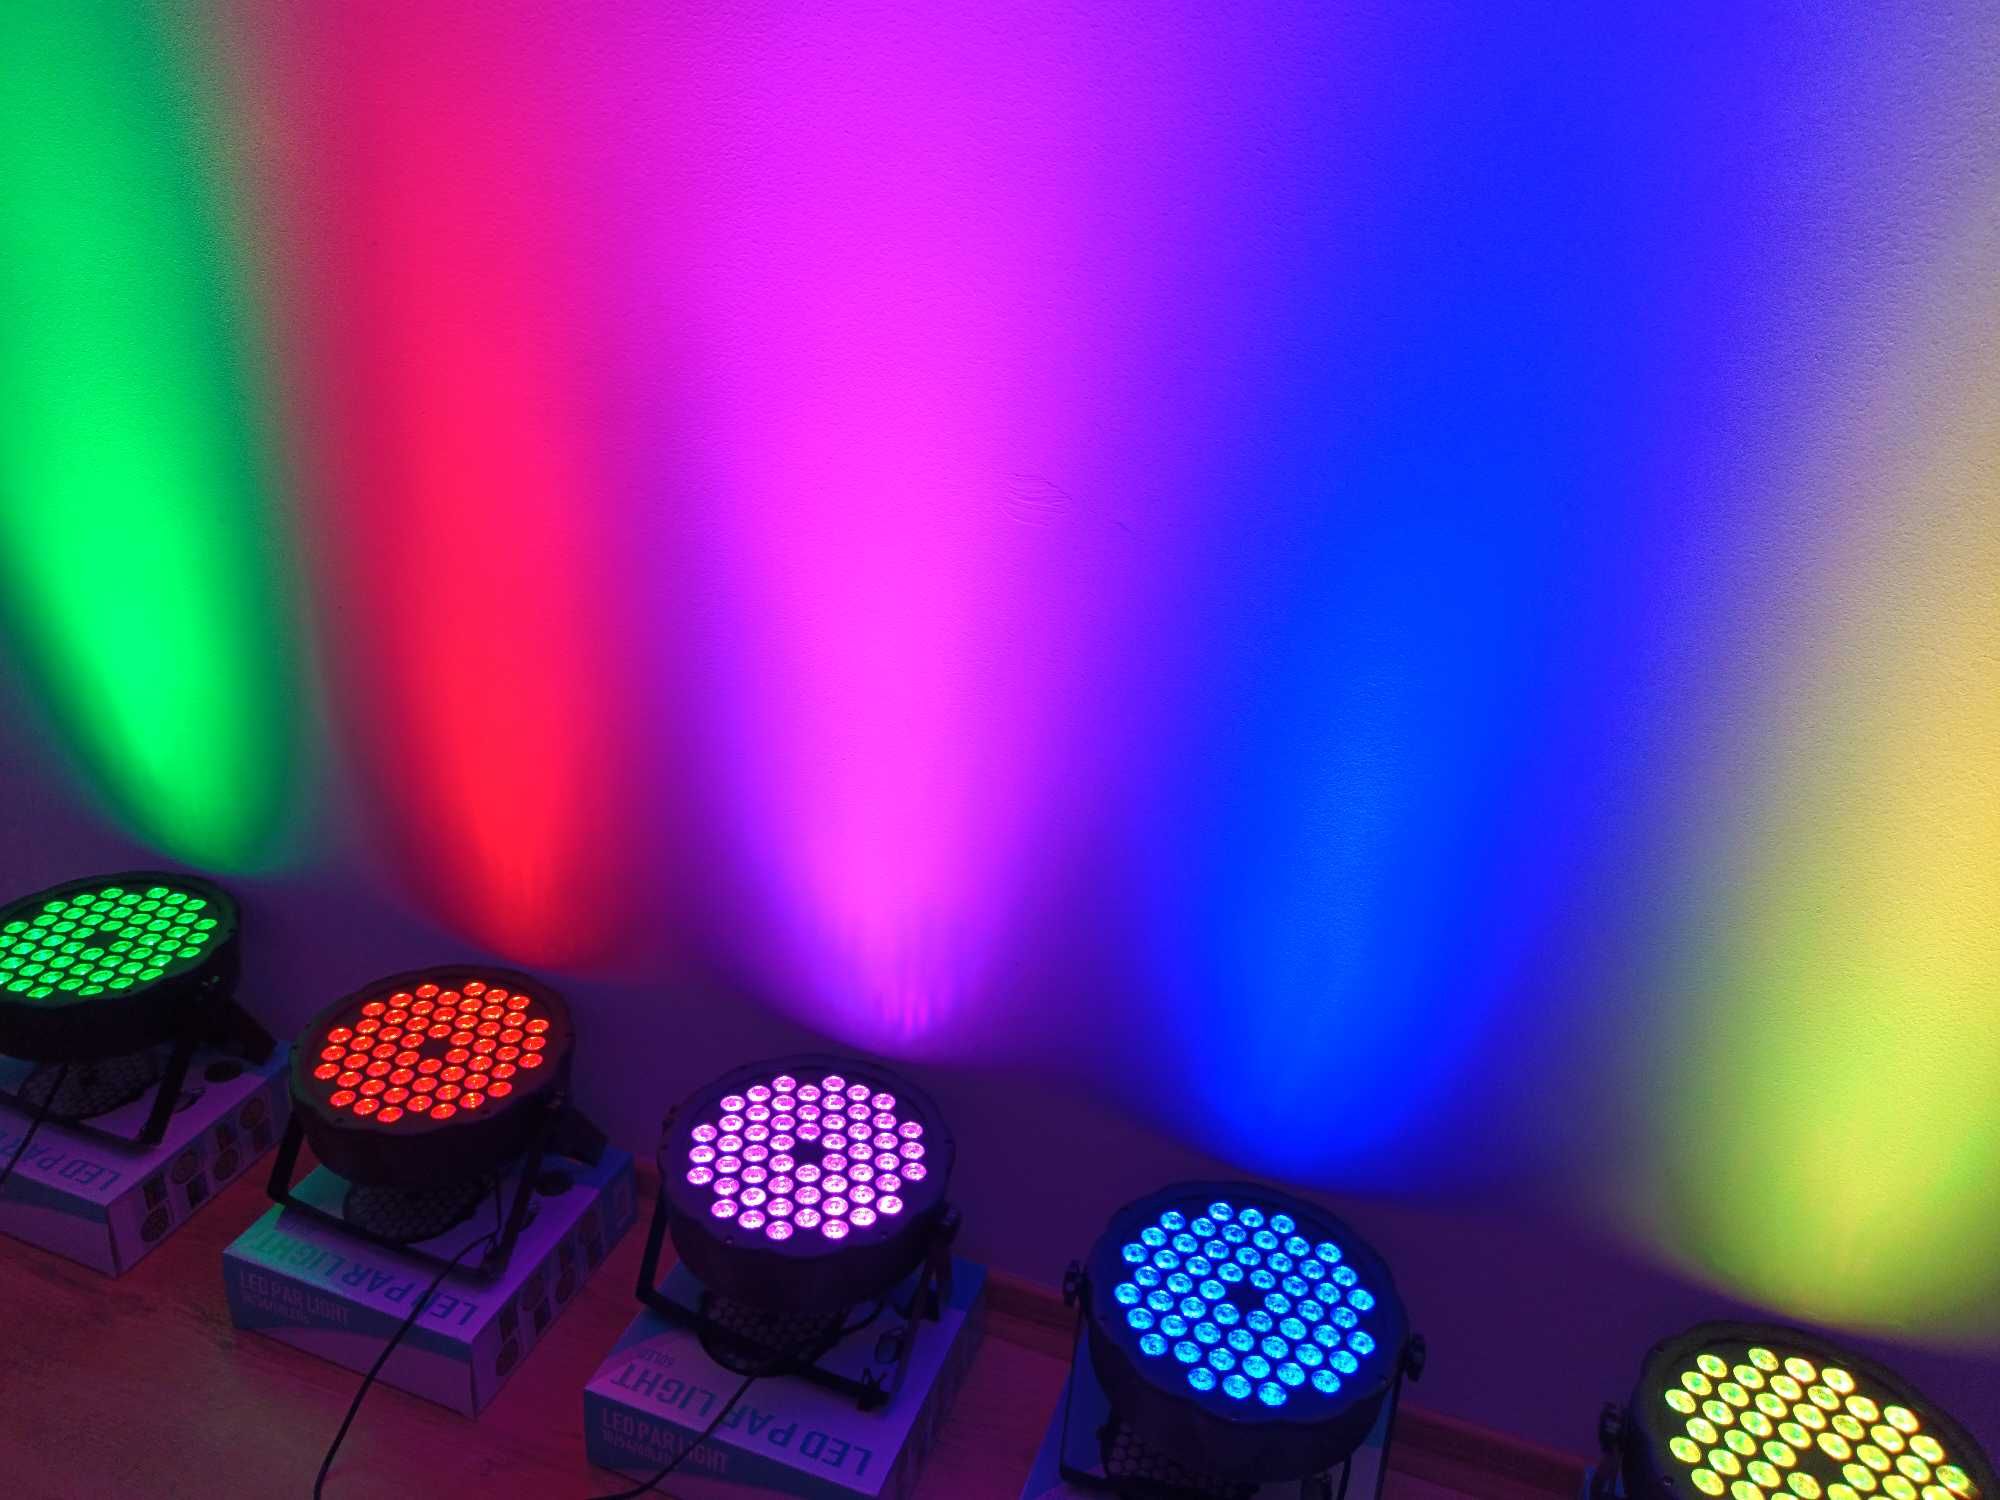 Lumini Club Lumini Bar Orga de lumini PARTY DJ Proiector 54 LED-URI